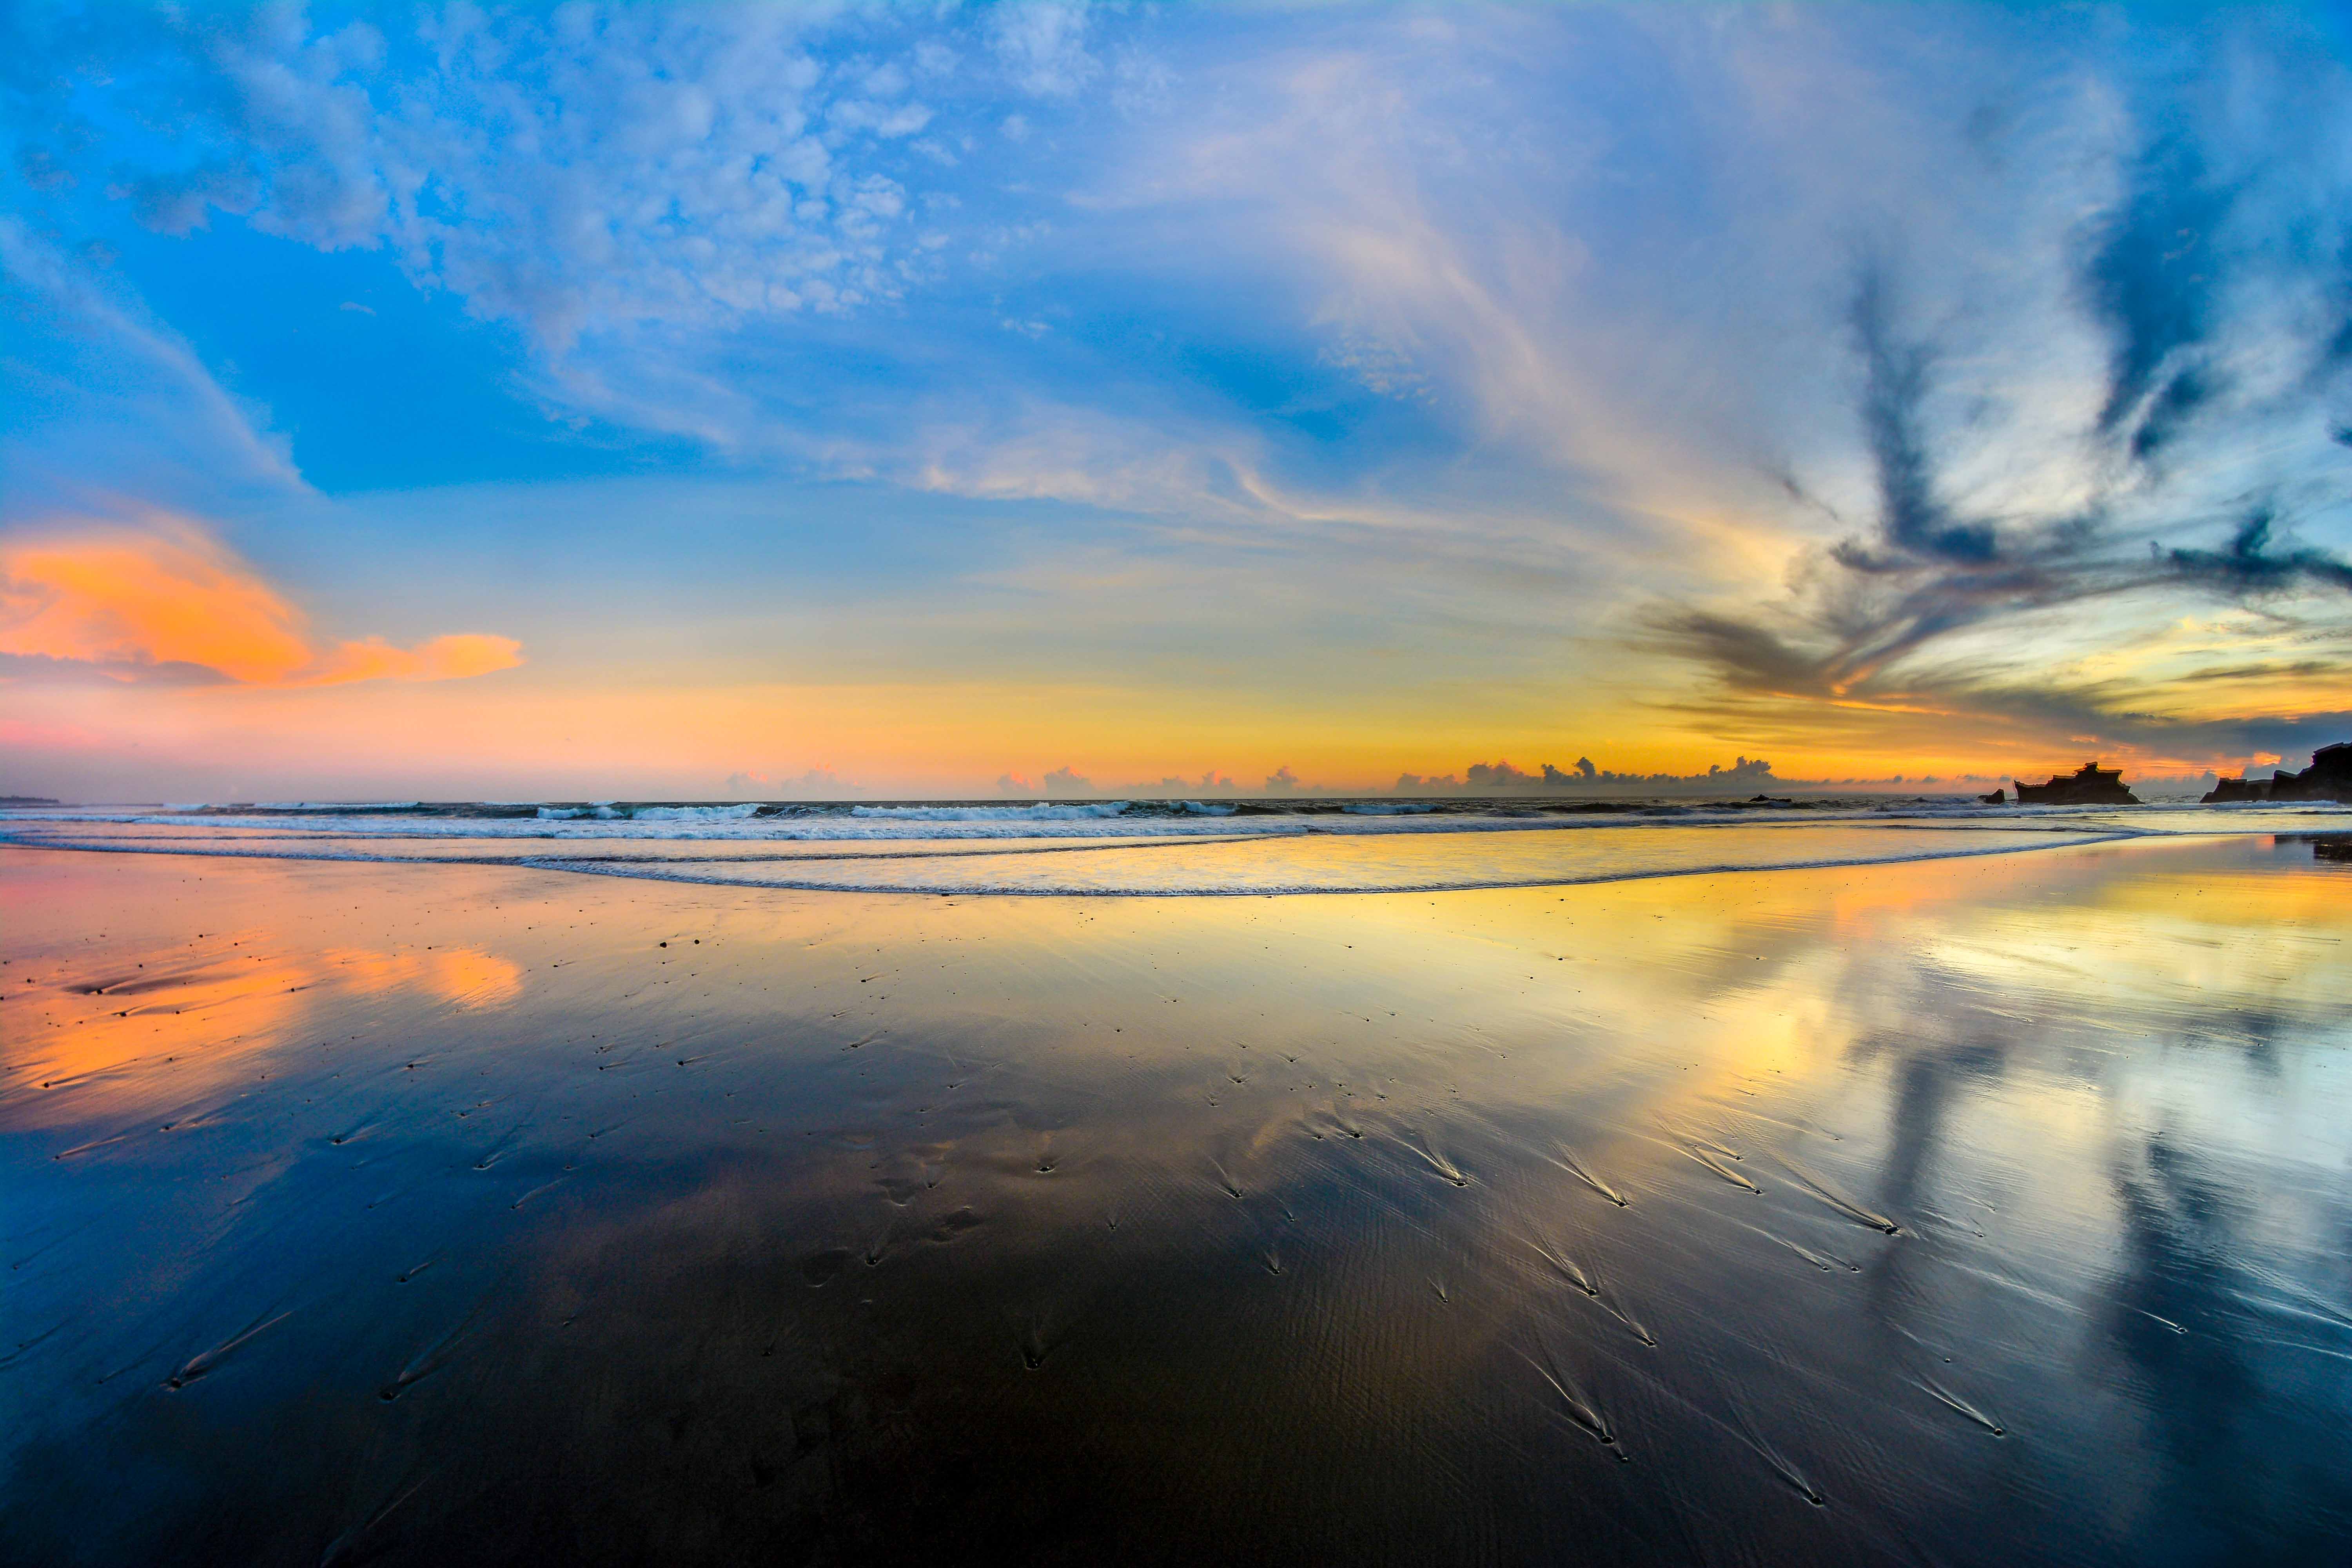 Coucher de soleil crépuscule bali indonésie kuta balian beach sanur blogvoyage blog voyage icietlabas sunset sunrise